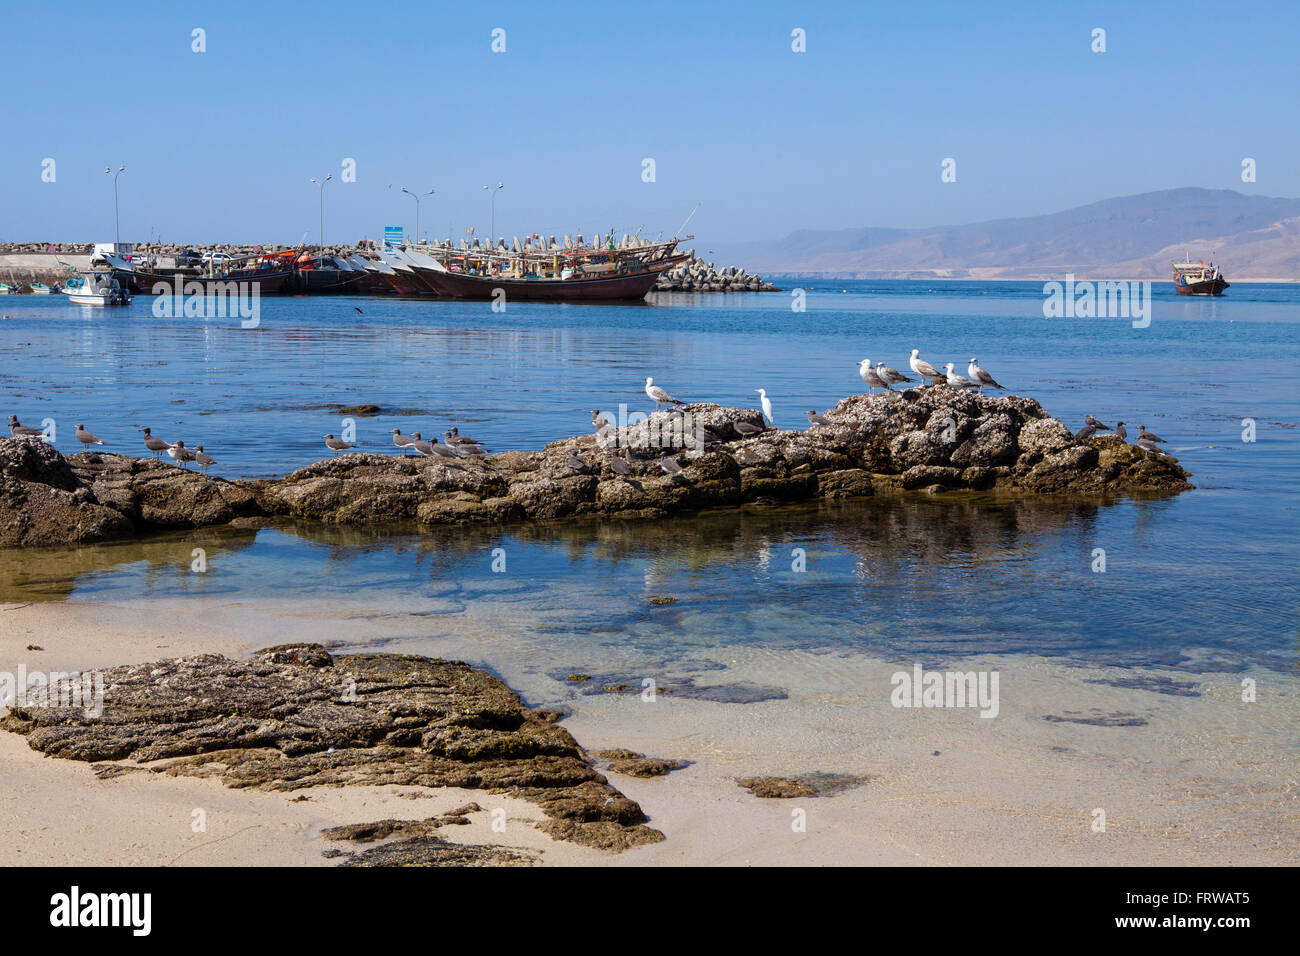 Barche da pesca in Mirbat, regione di Dhofar, Oman. Foto Stock